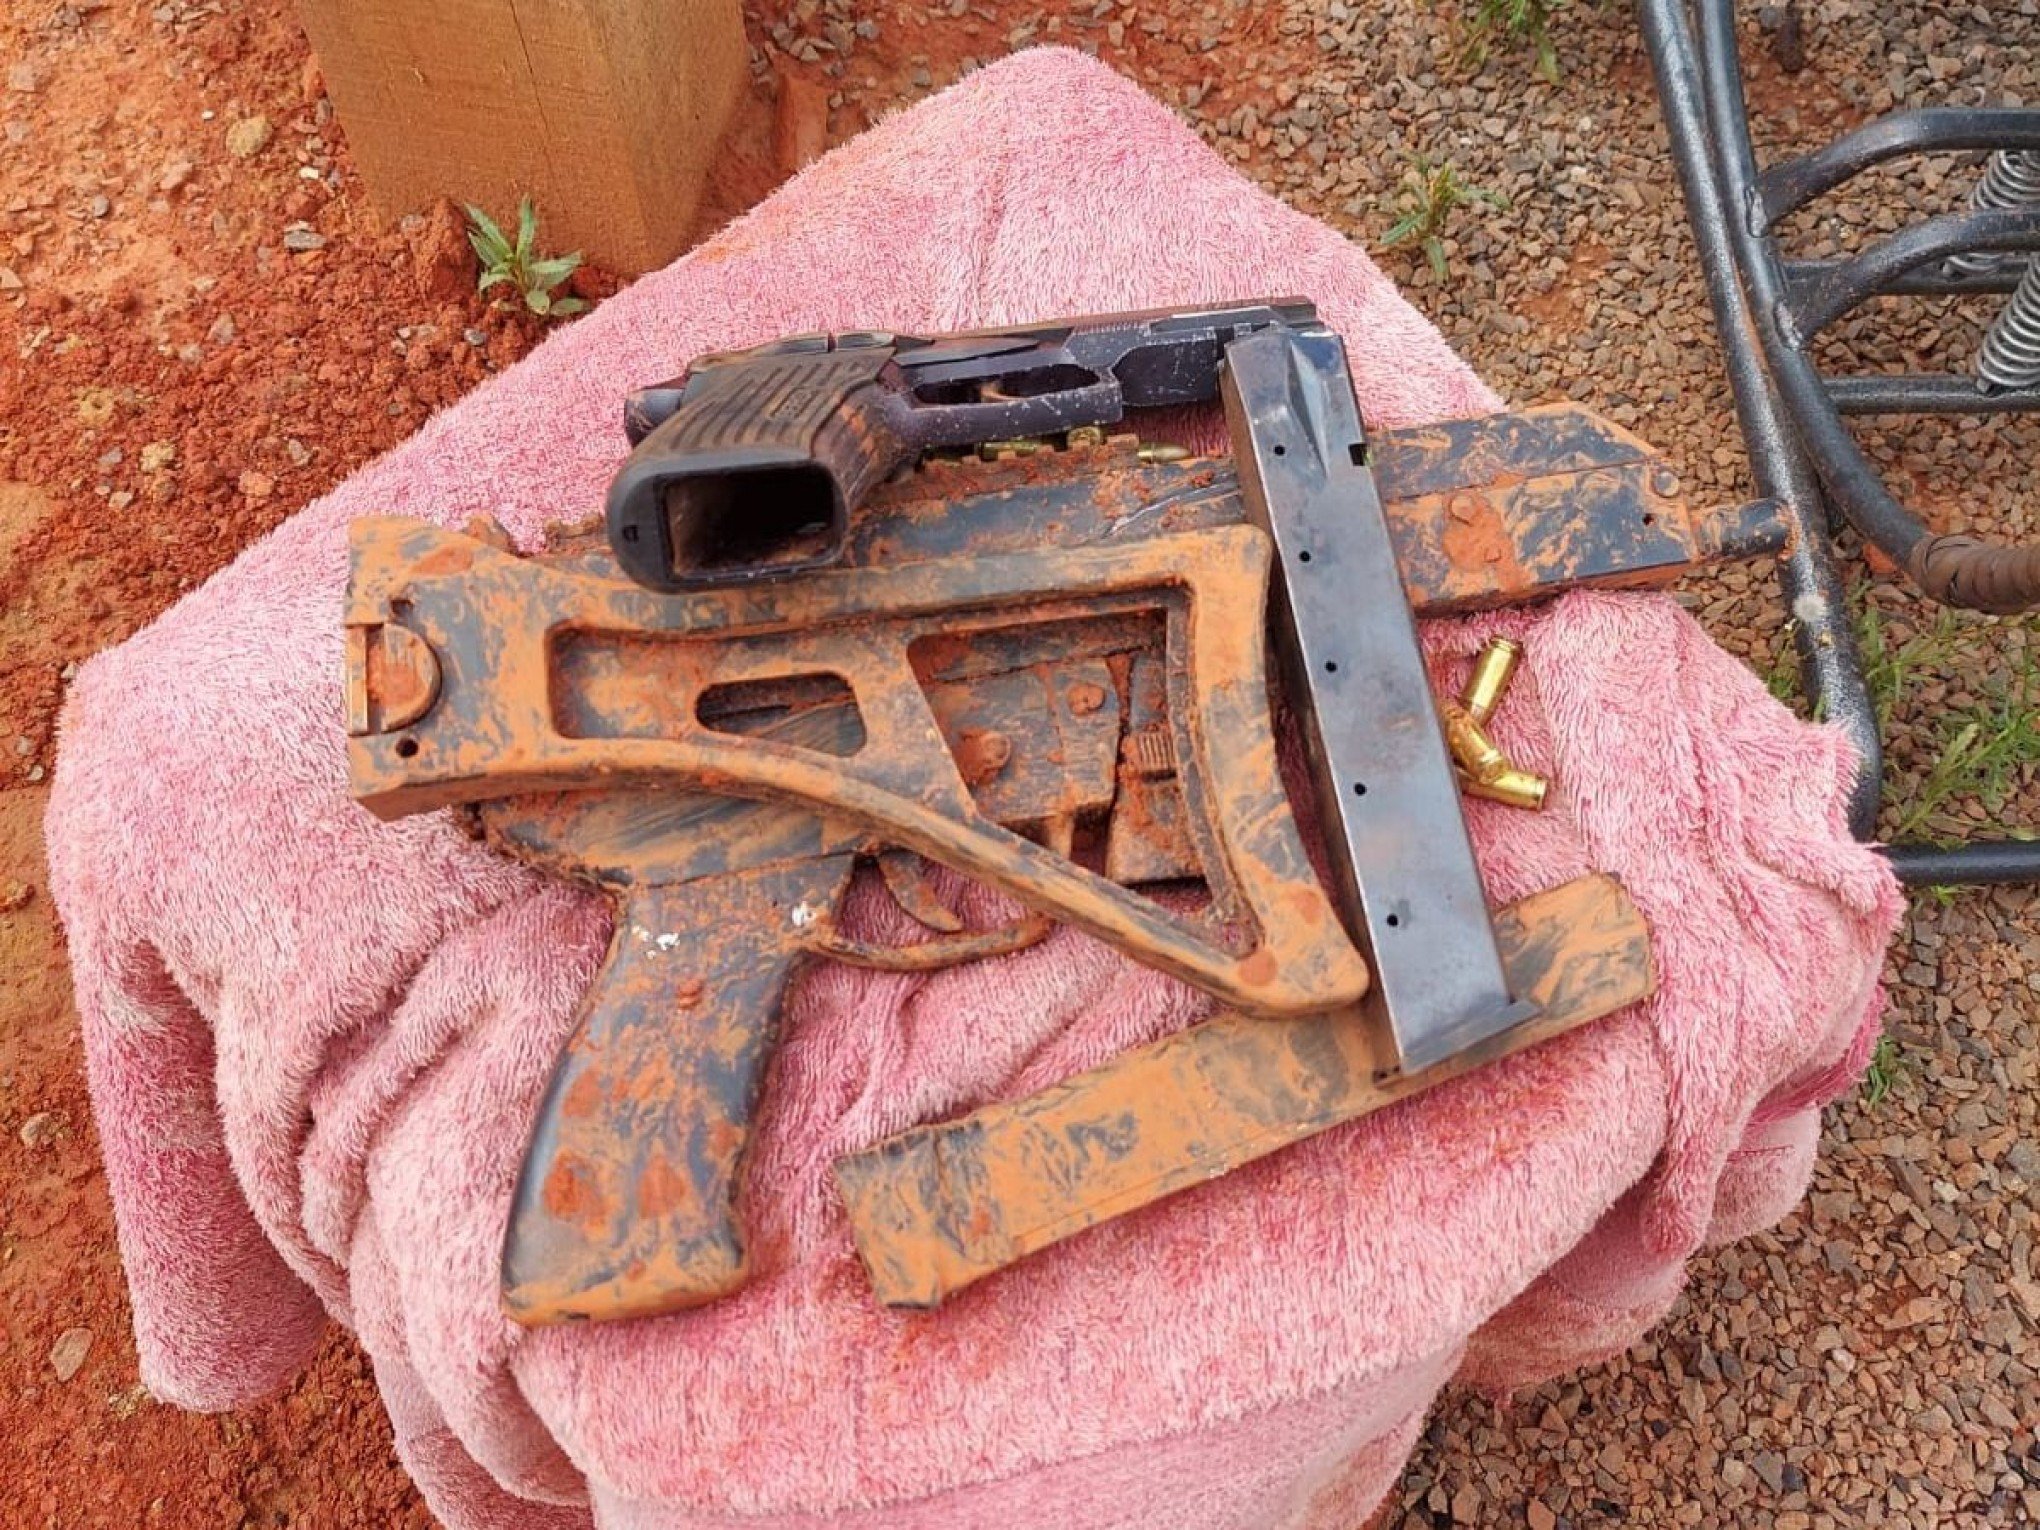 Submetralhadora, armas e munições são encontradas enterradas em residência em Cachoeirinha